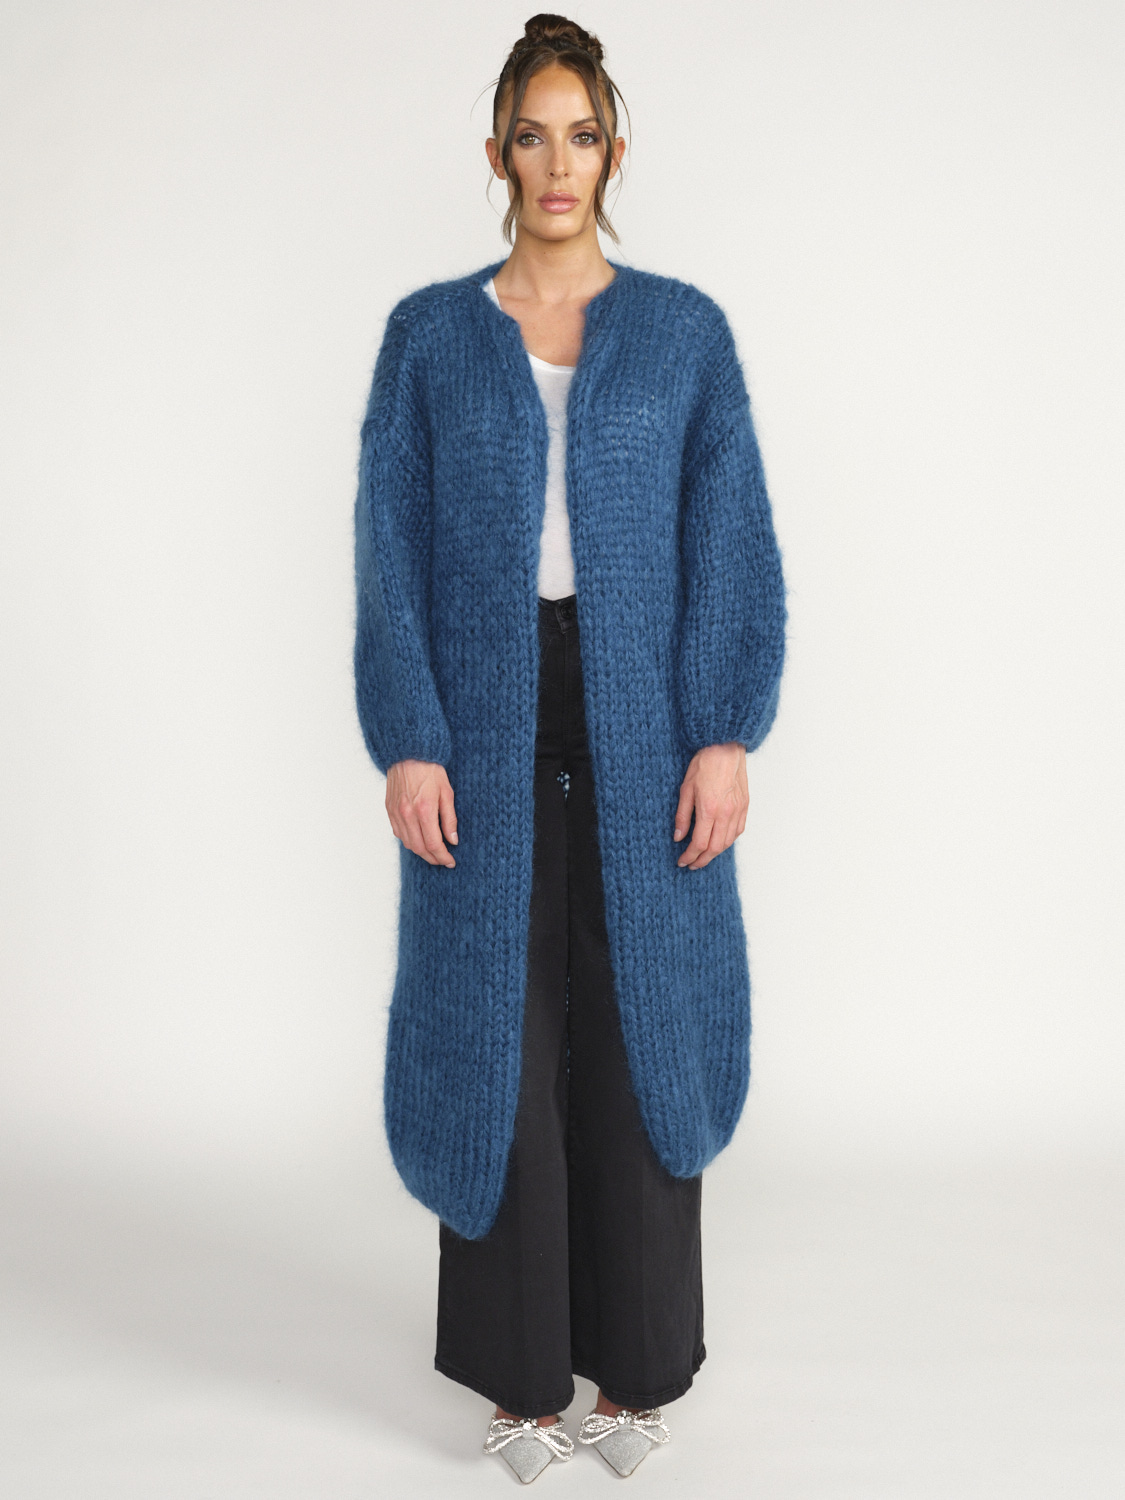 Maiami Mohair Big Coat - Cardigan à manches larges en mohair blau Taille unique